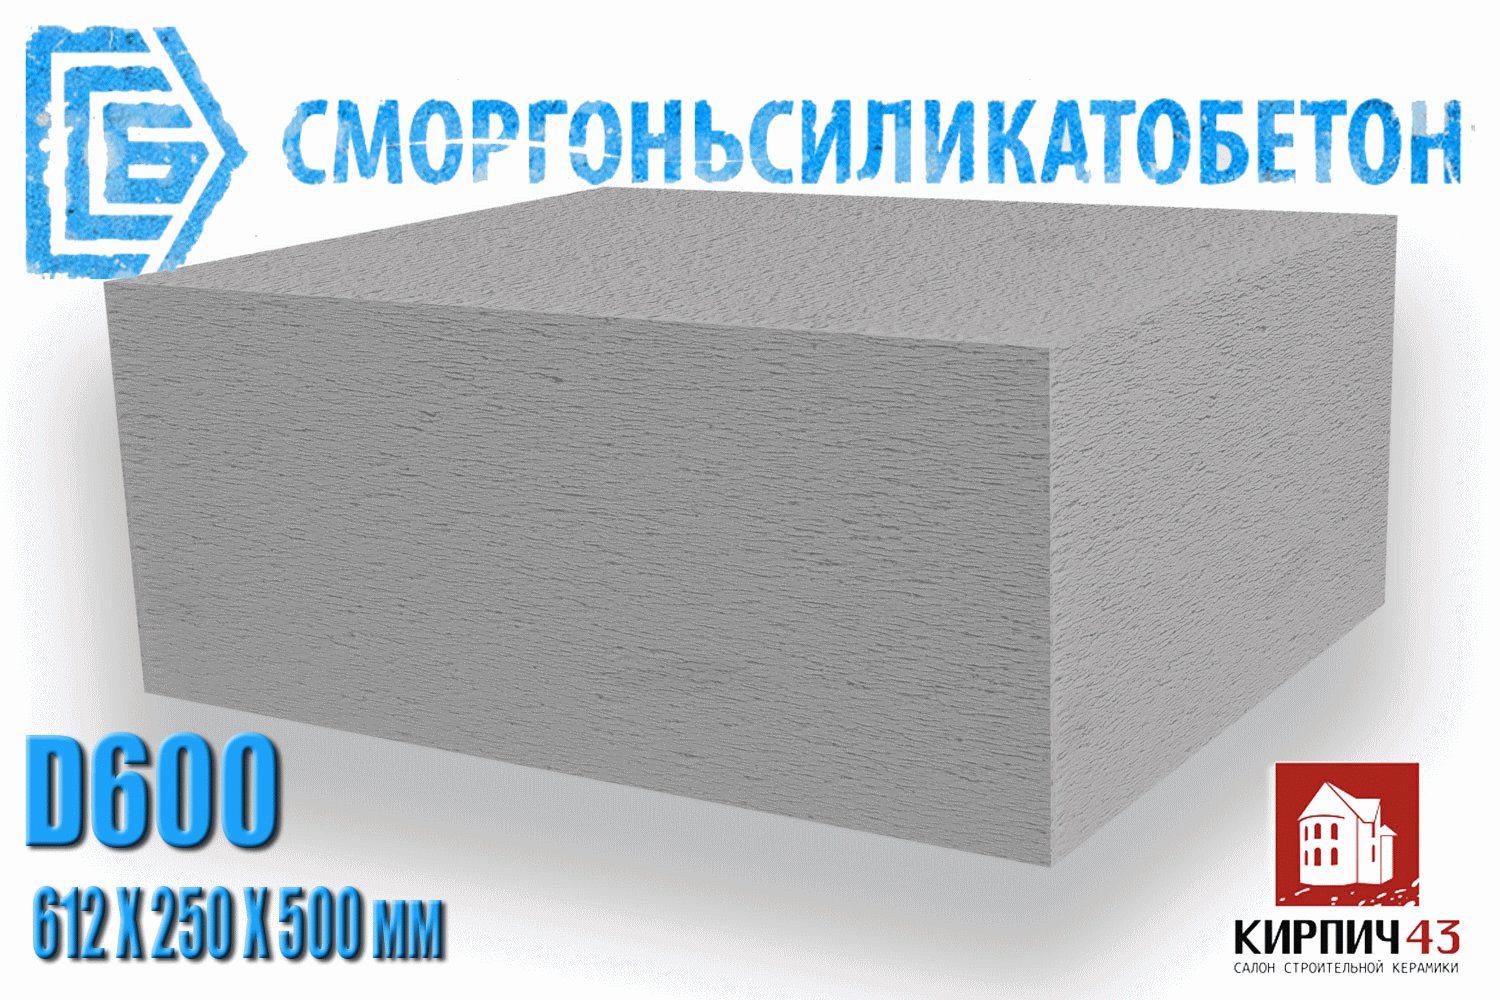  Газобетонные блоки D600 D500 D400 4600.00  руб.